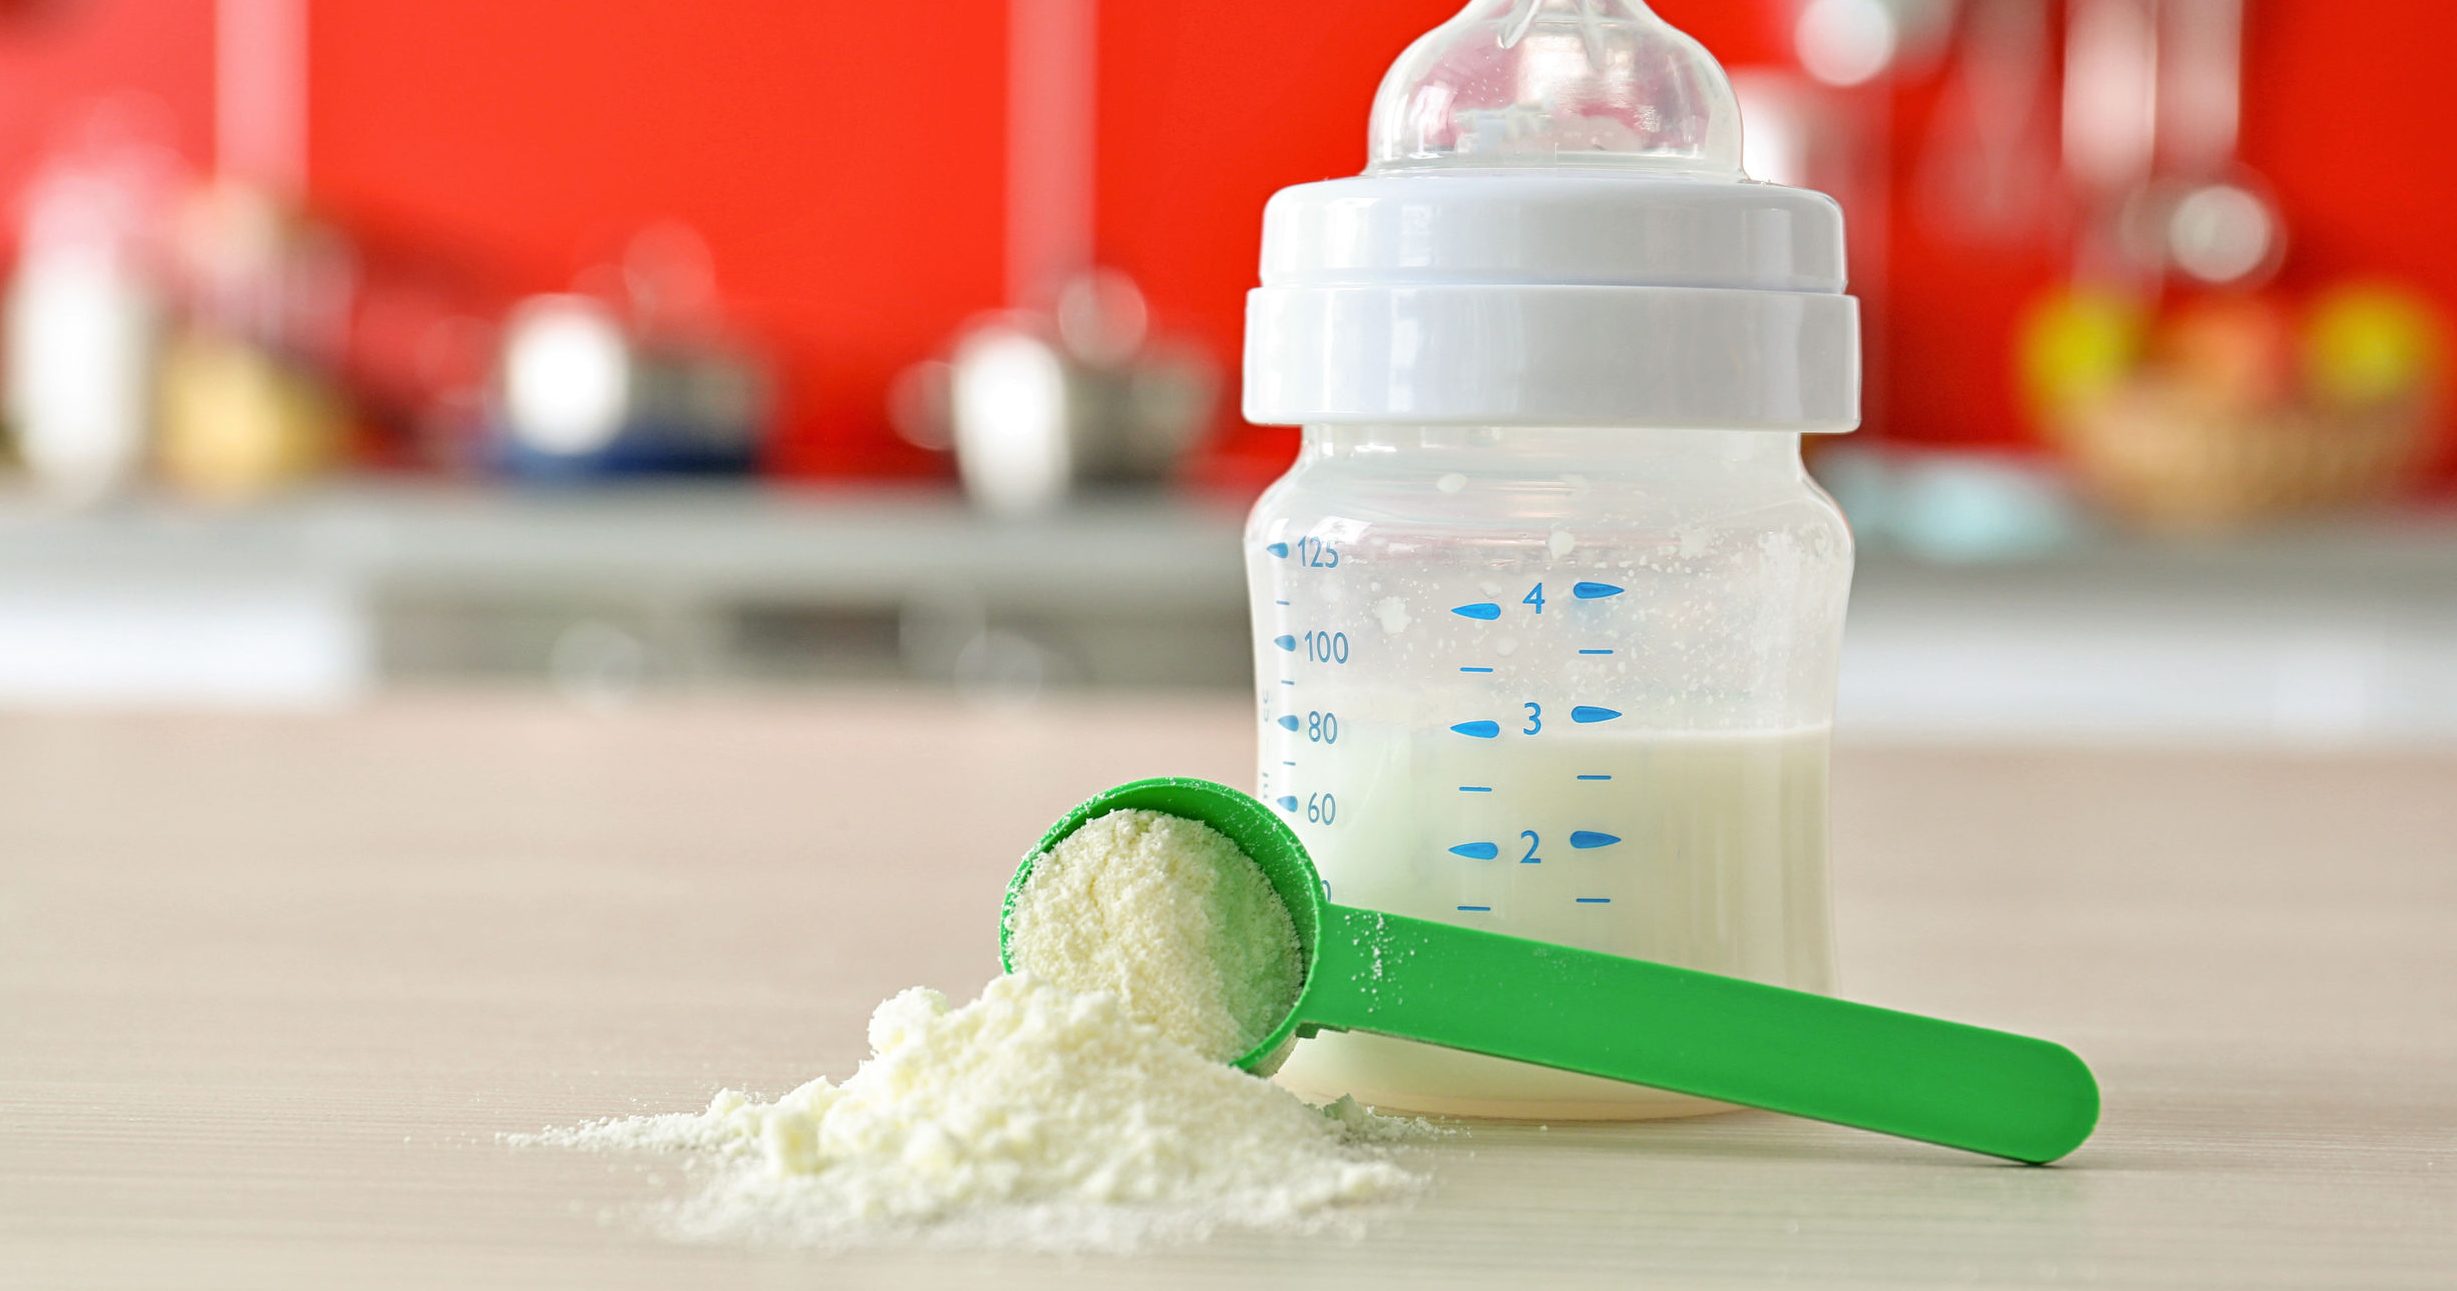 Estas leches de fórmula para bebé son dañinas según Profeco